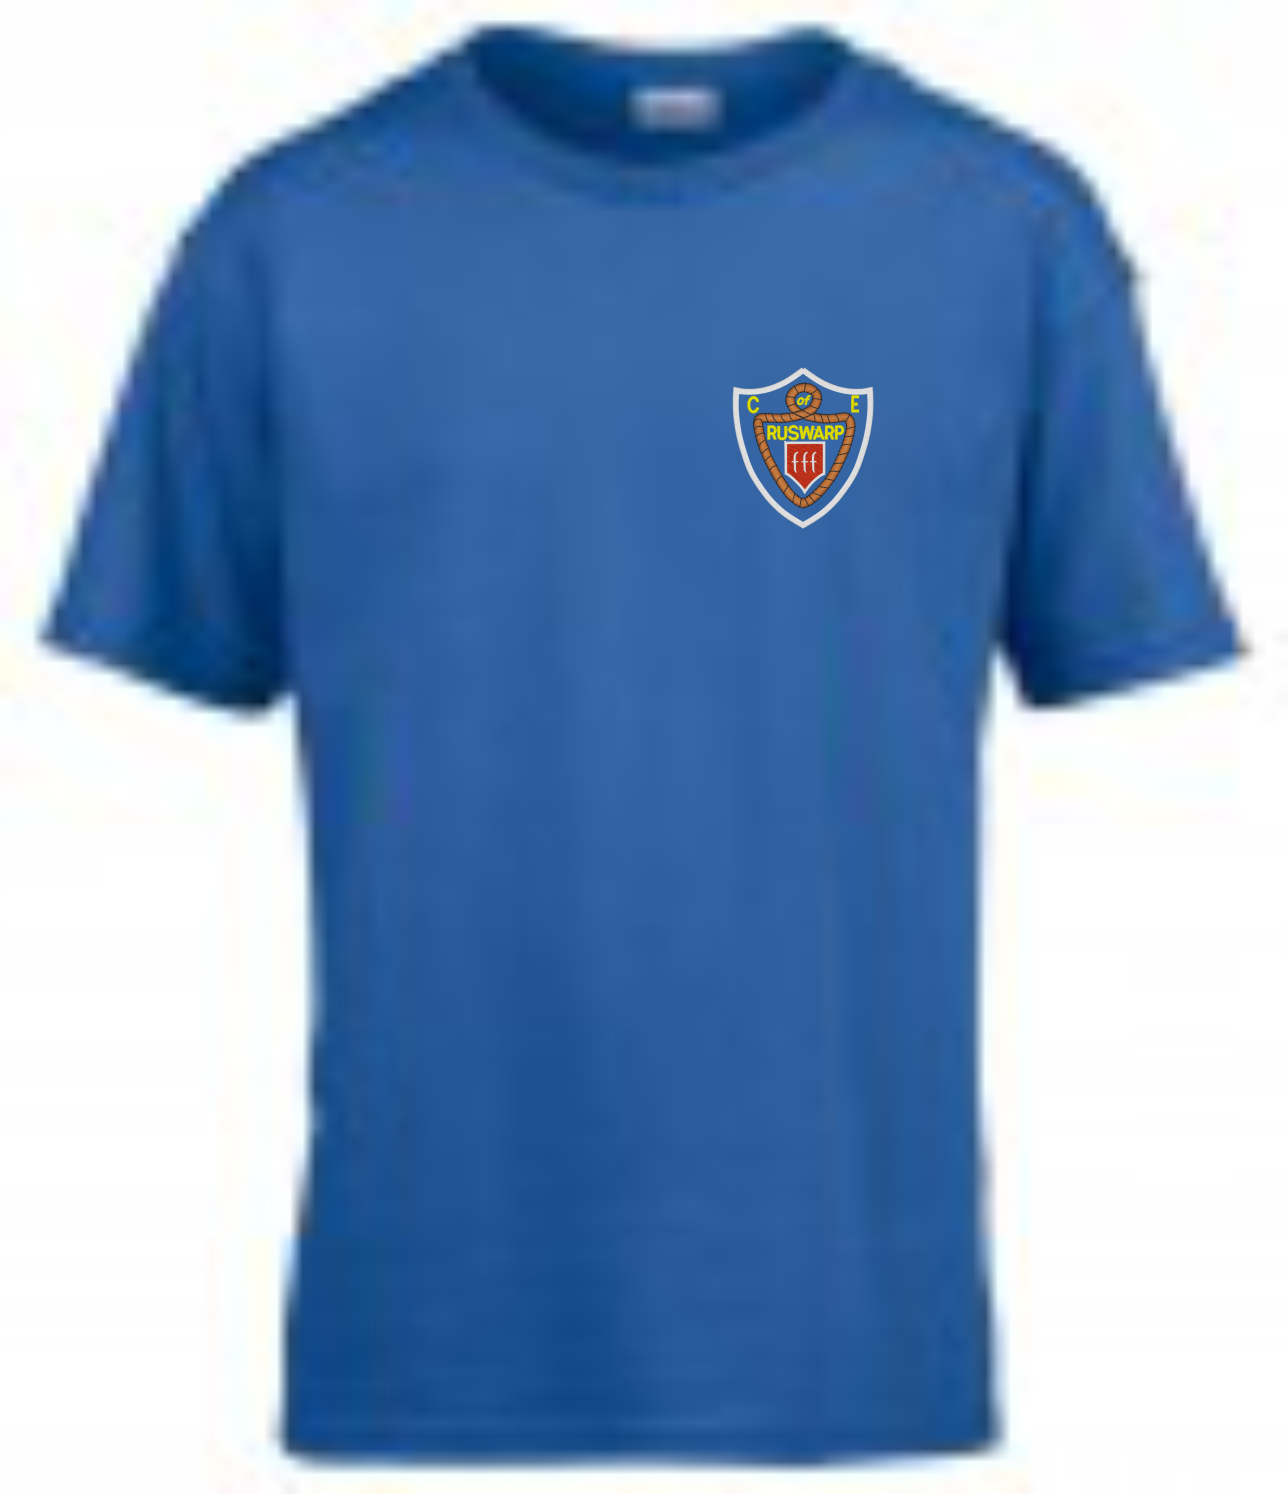 Ruswarp Blue PE T-Shirt